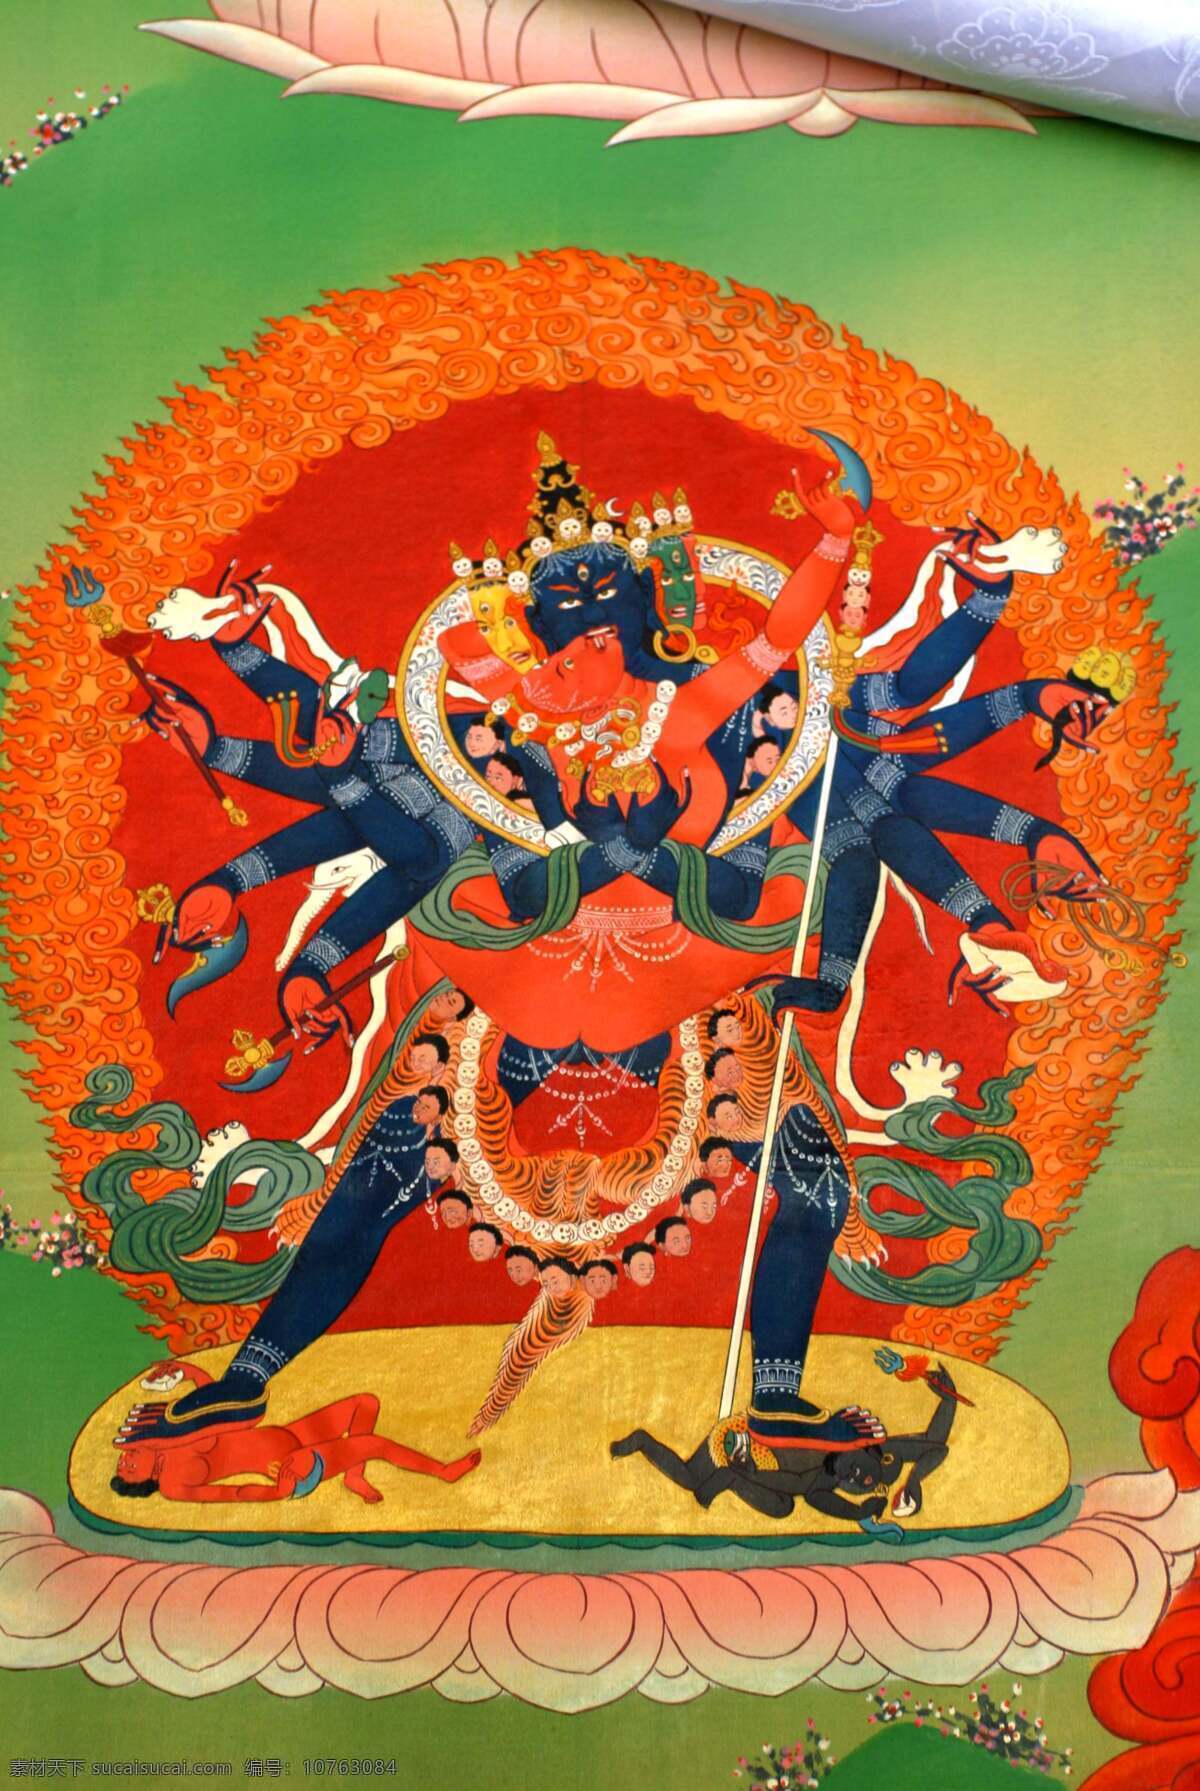 藏传佛教 壁画 唐卡 西藏 宗教信仰 文化艺术 艺术瑰宝 藏画 原始 色彩 浓郁 造型 神秘 绘画 工艺 精美绝伦 摄影图库